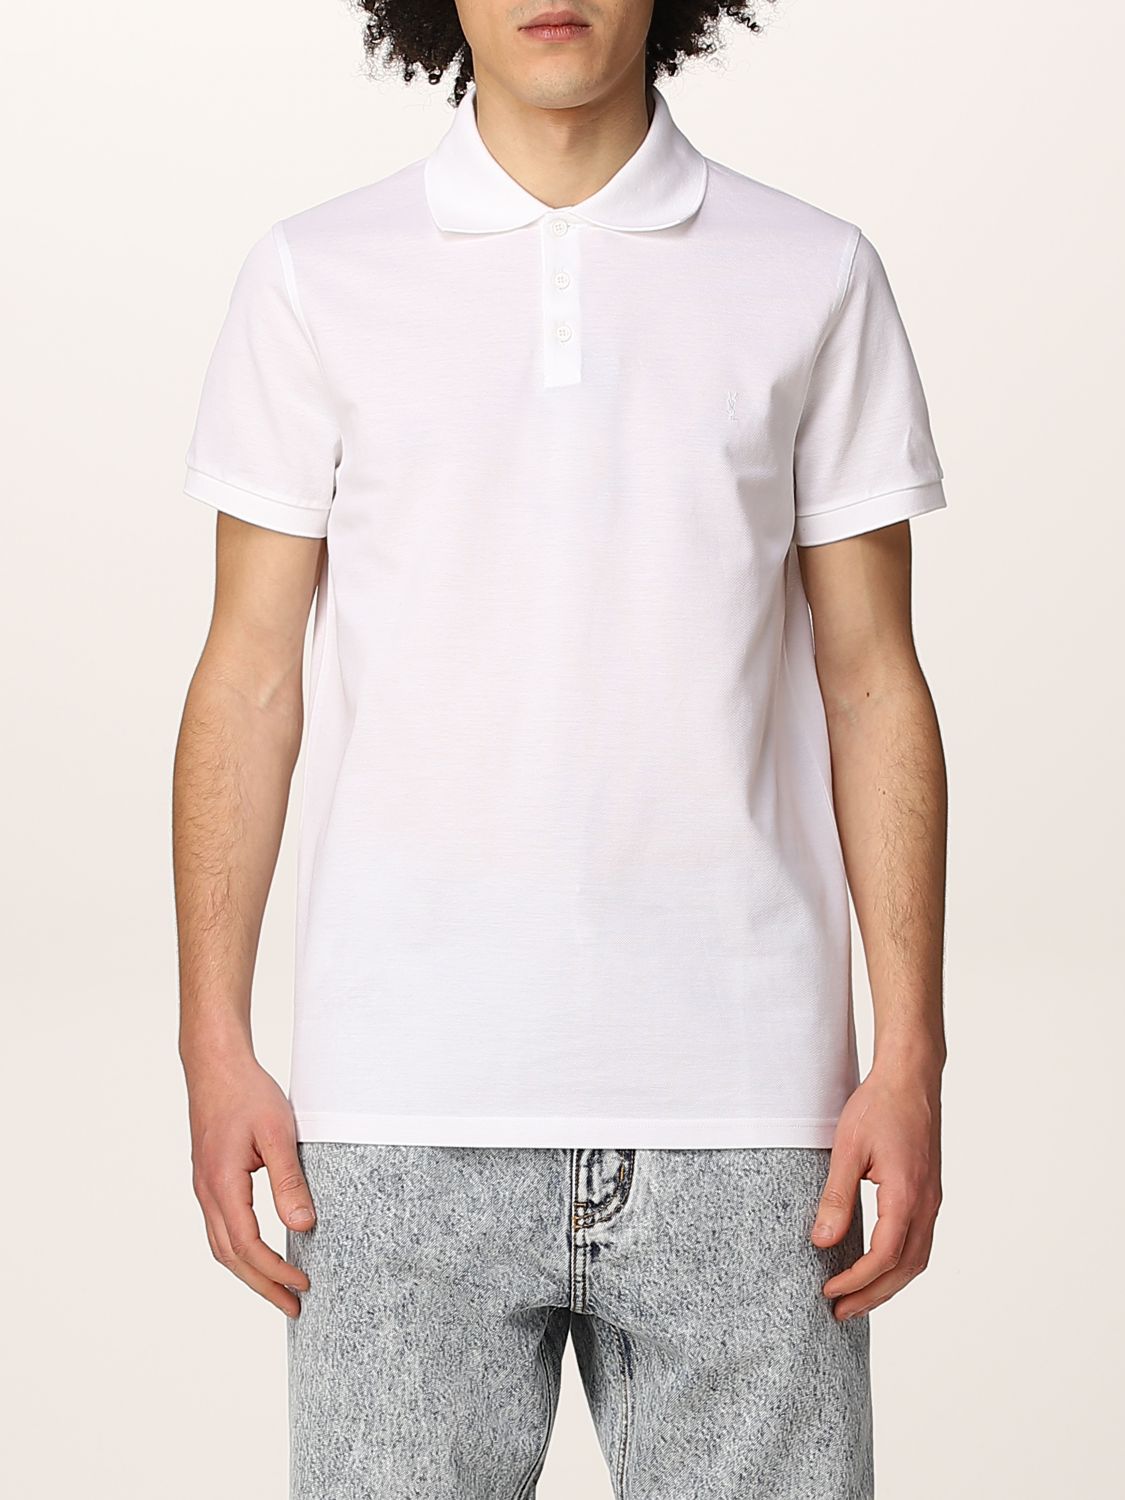 Polo shirt Saint Laurent: Saint Laurent piqué cotton basic polo t-shirt white 1